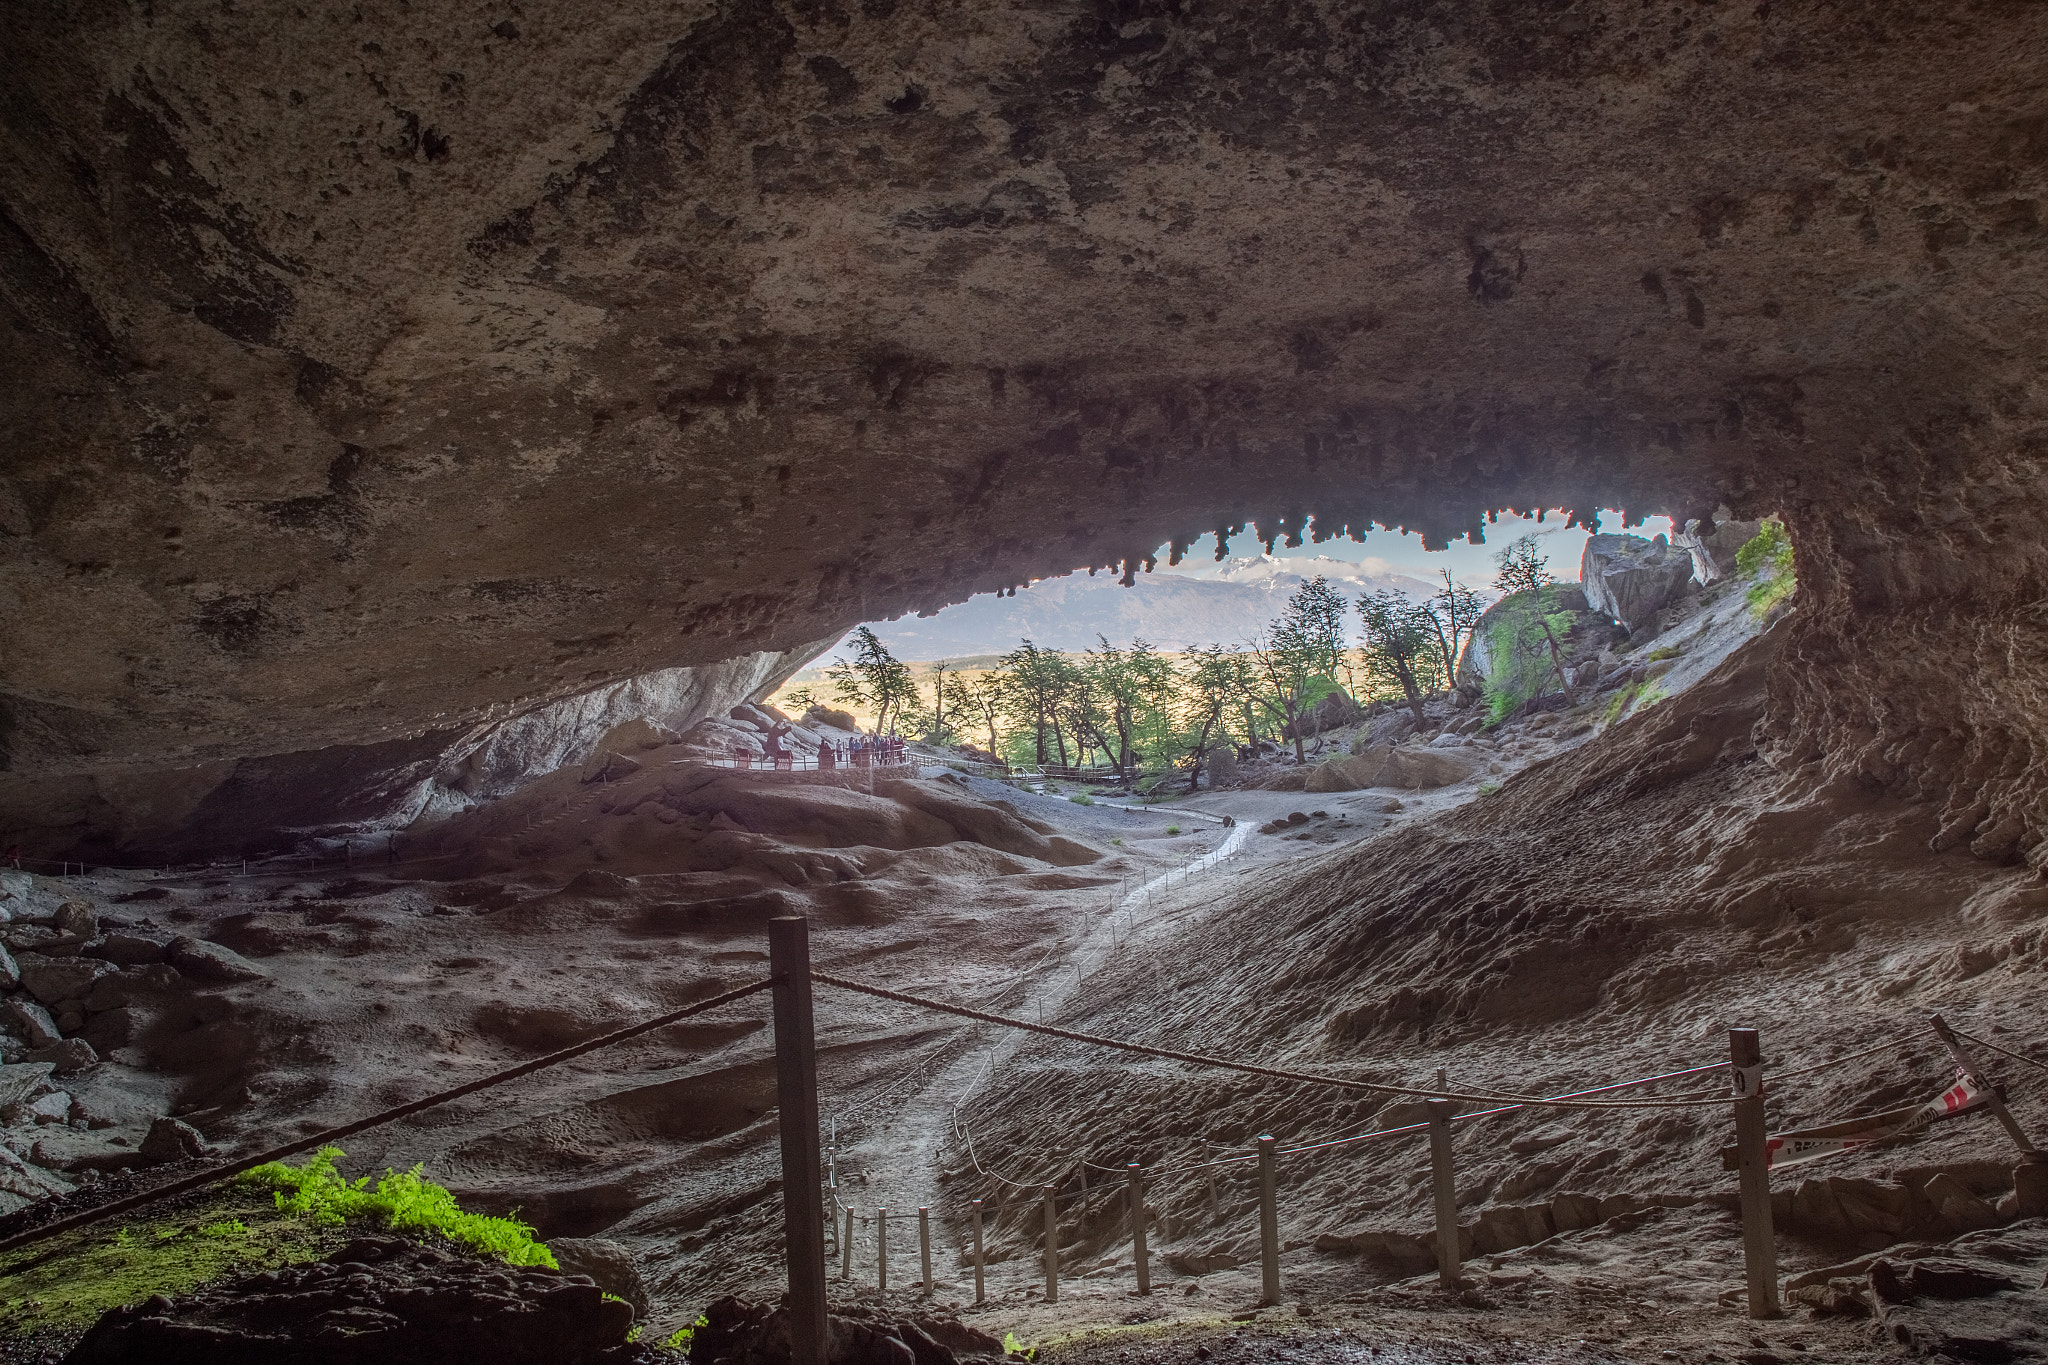 Canon EF 17-35mm f/2.8L + 1.4x sample photo. Cueva del milodon,chile photography